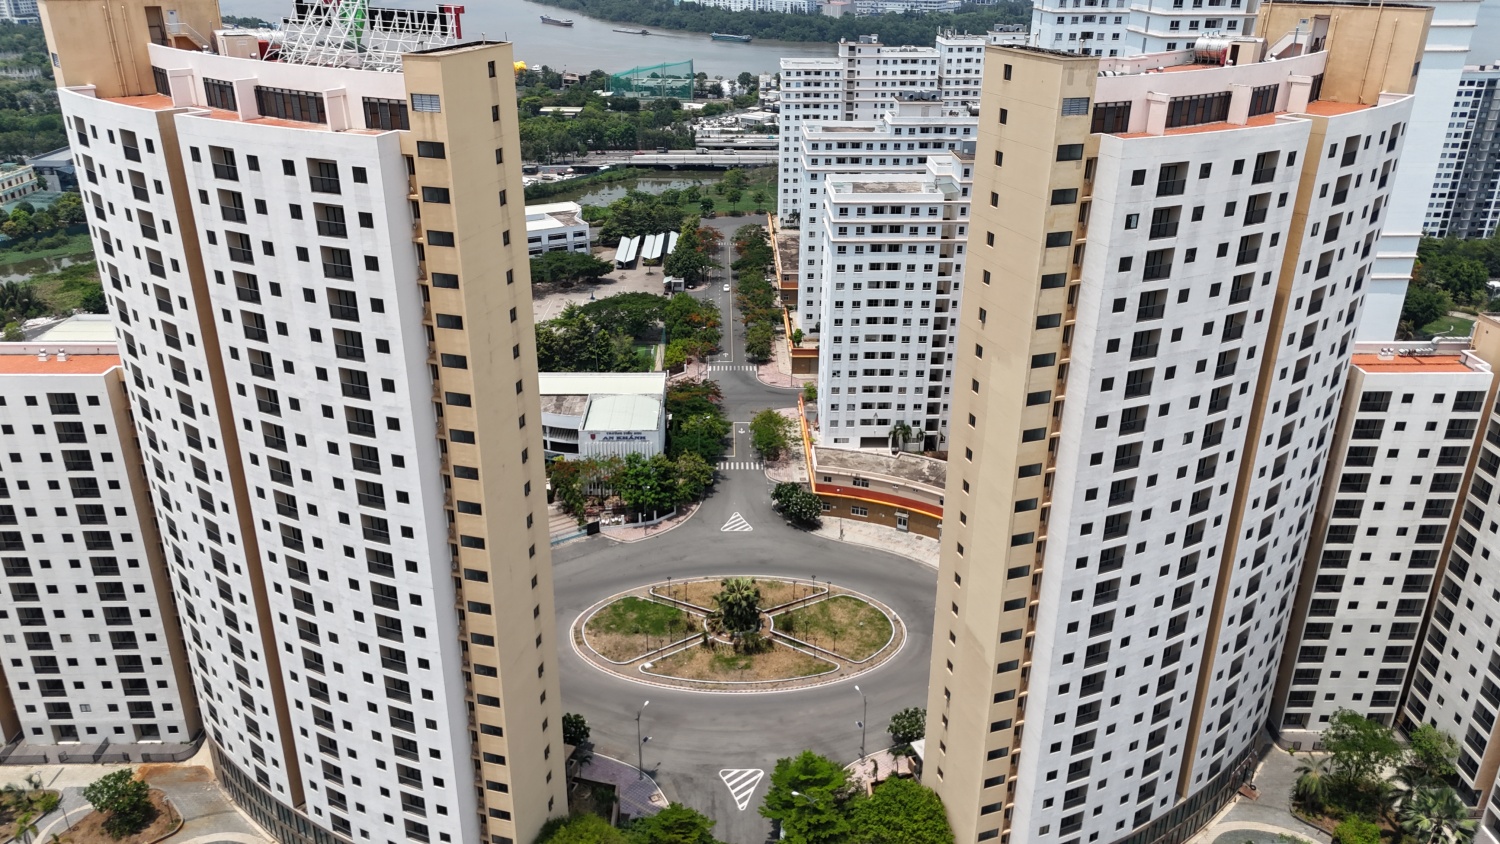 [Chùm ảnh] Hiện trạng 3.790 căn hộ tái định cư tại Khu đô thị mới Thủ Thiêm sắp đấu giá lần 4